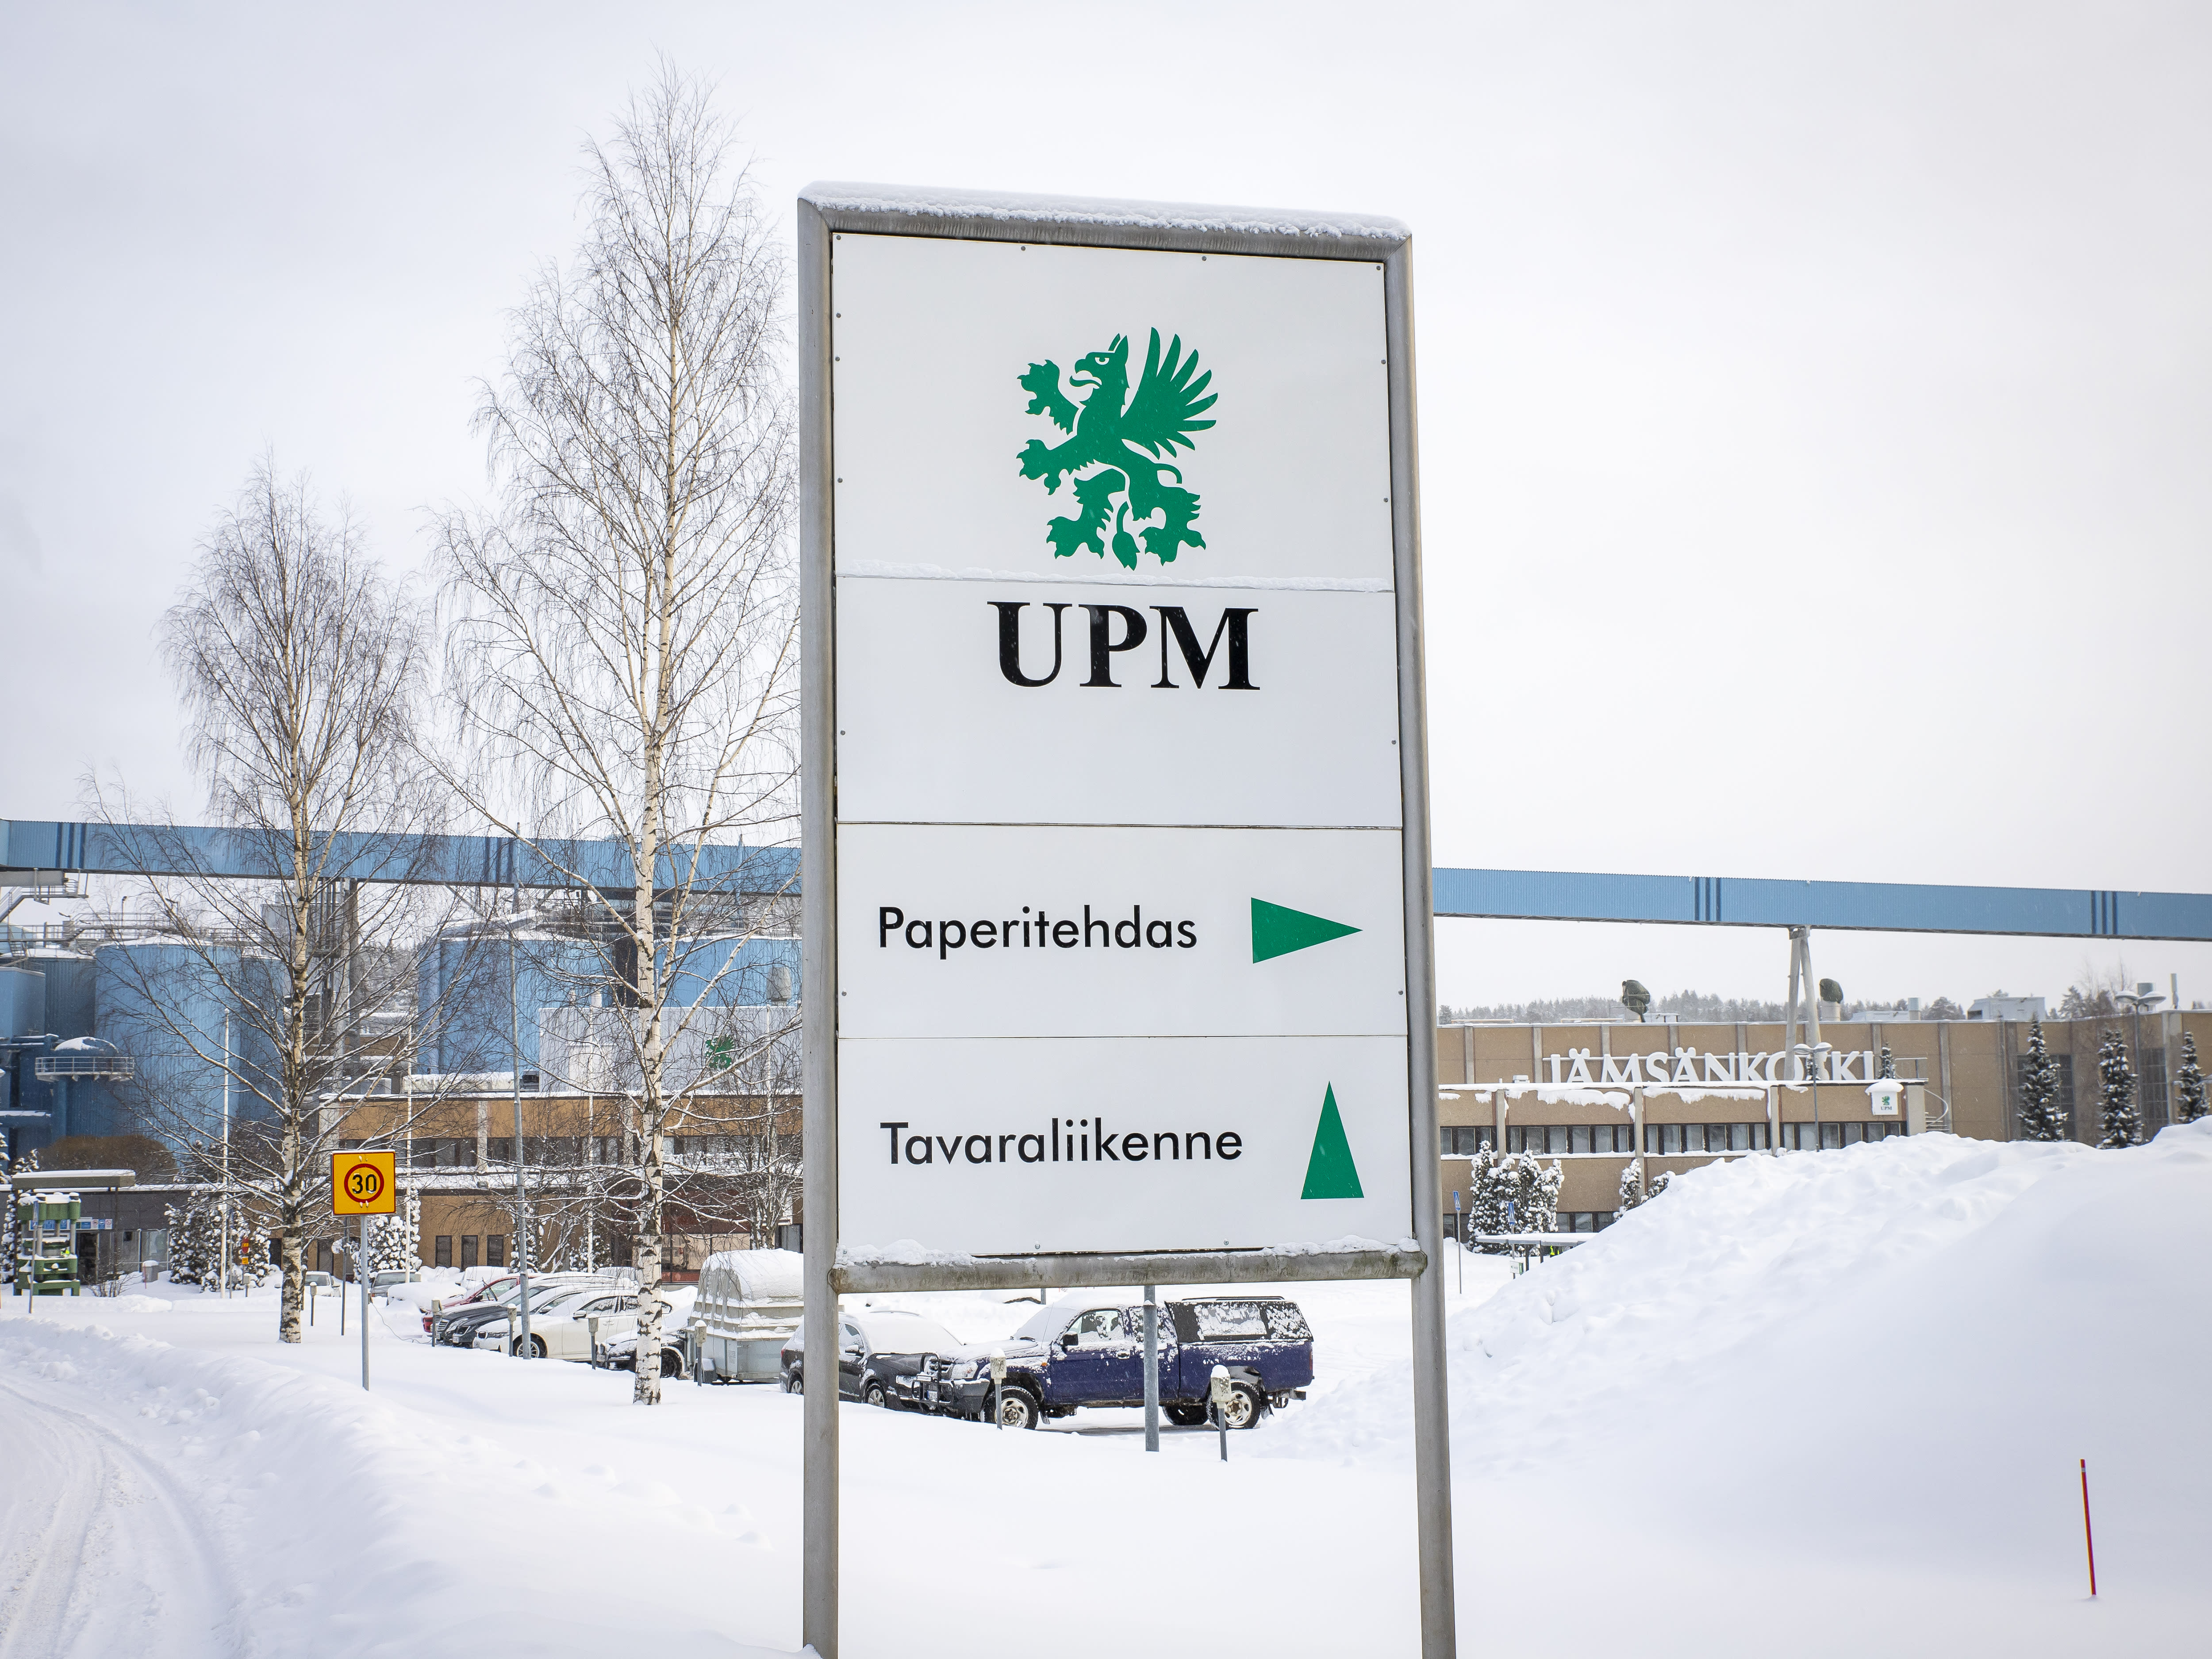 Der Streik in den Werken von UPM wird bis Mitte April andauern